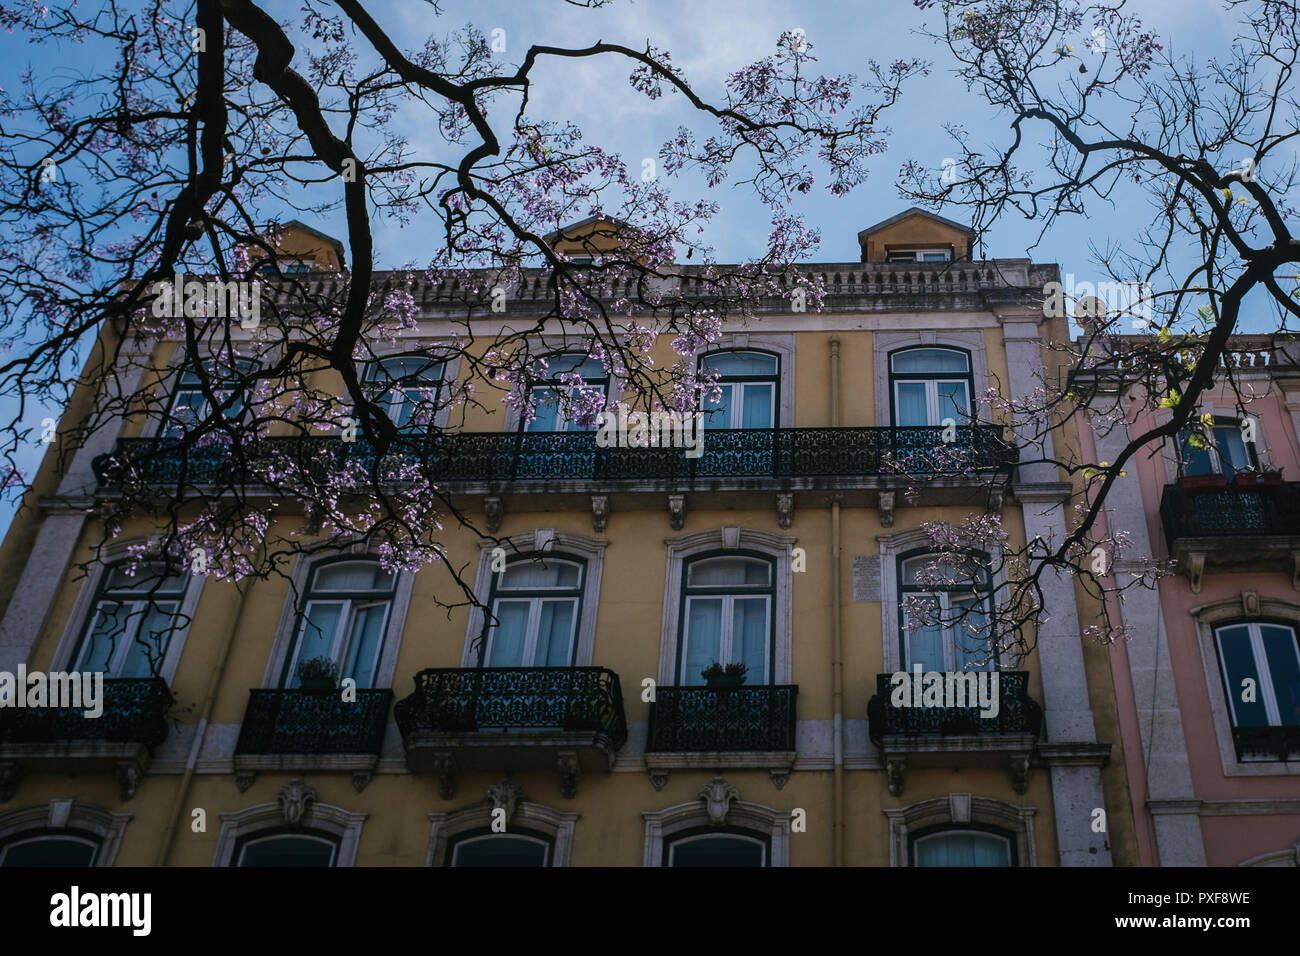 Auf der Suche nach oben durch blühende Zweige an der Außenseite eines gelben Gebäude mit Fenstern und Balkonen an einem sonnigen Sommertag in Lissabon, Portugal Stockfoto